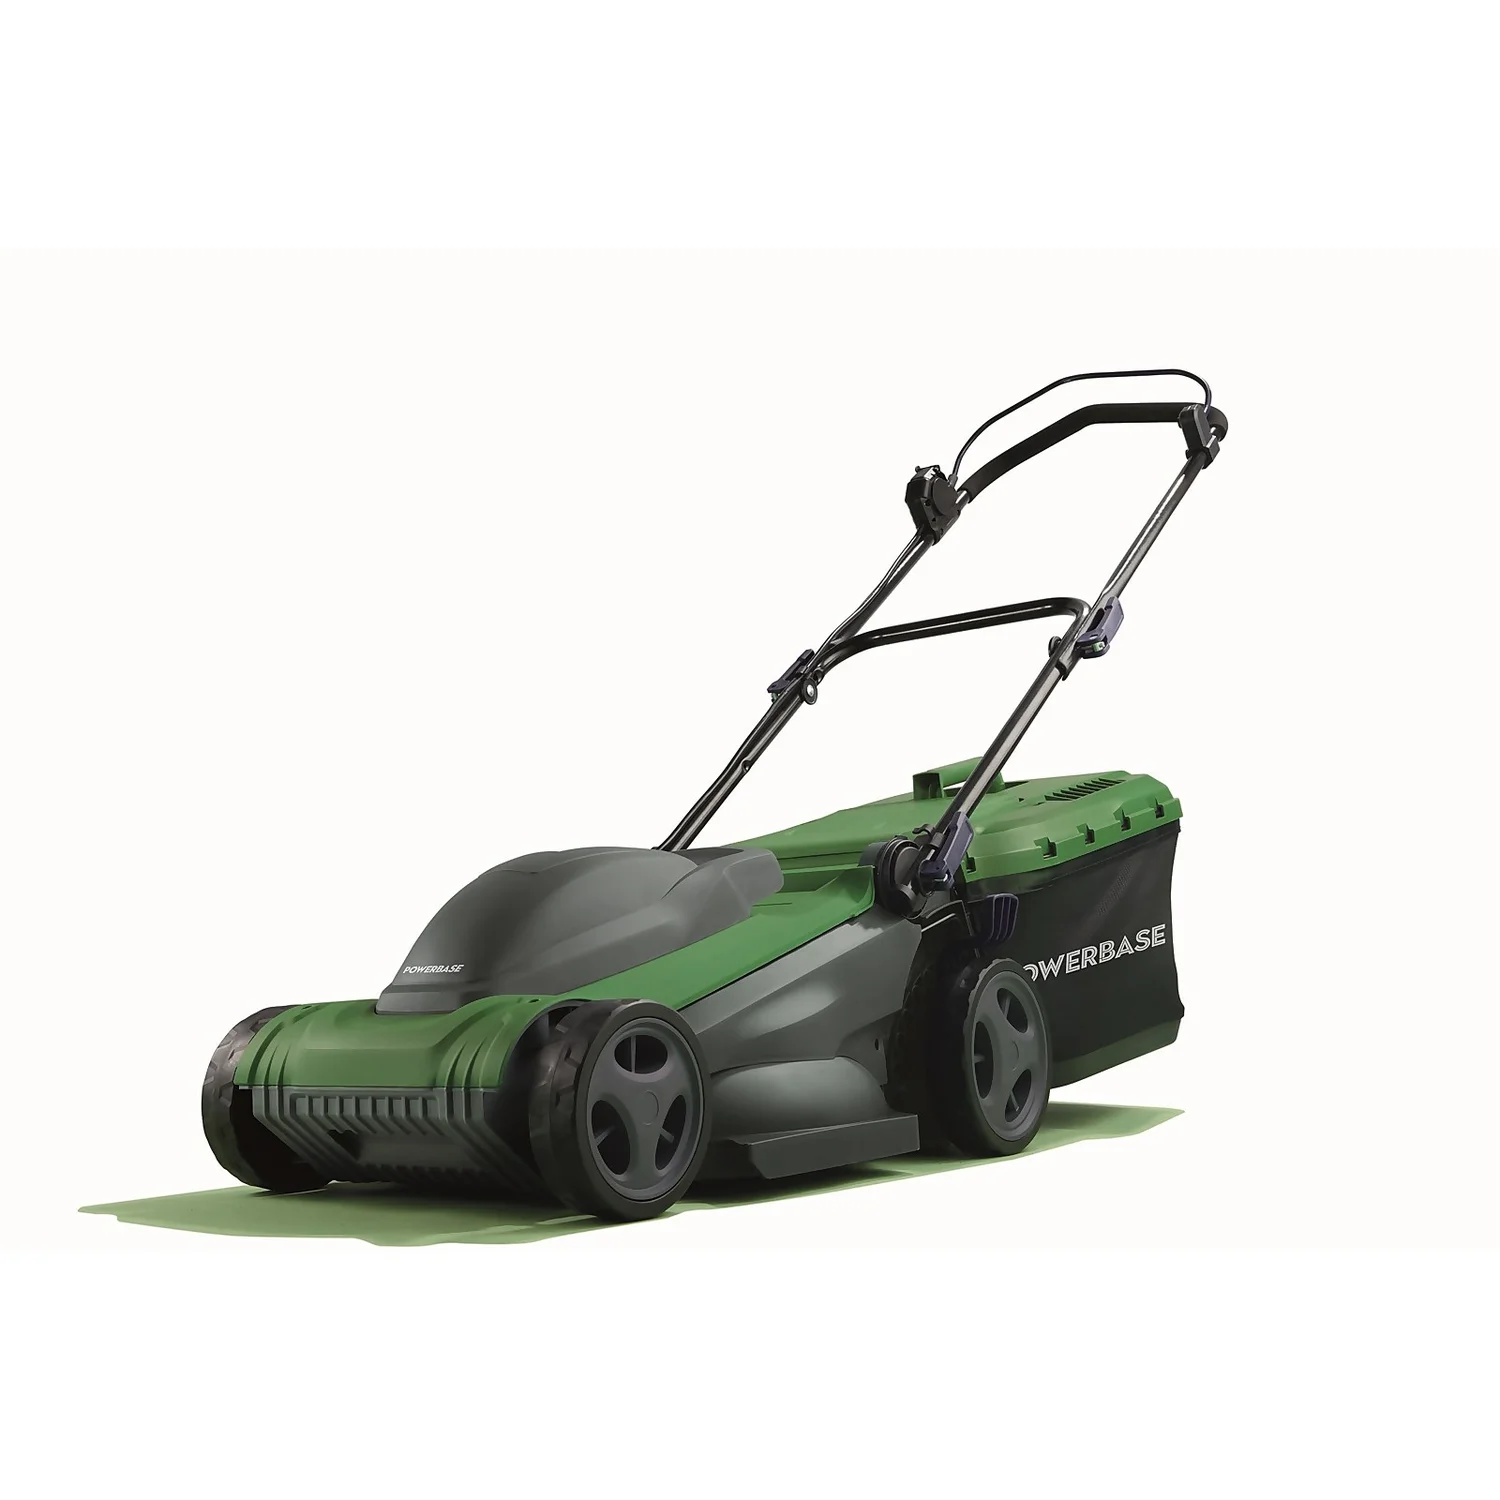 Save &pound20: Powerbase 1600W Electric Lawn Mower - 37cm